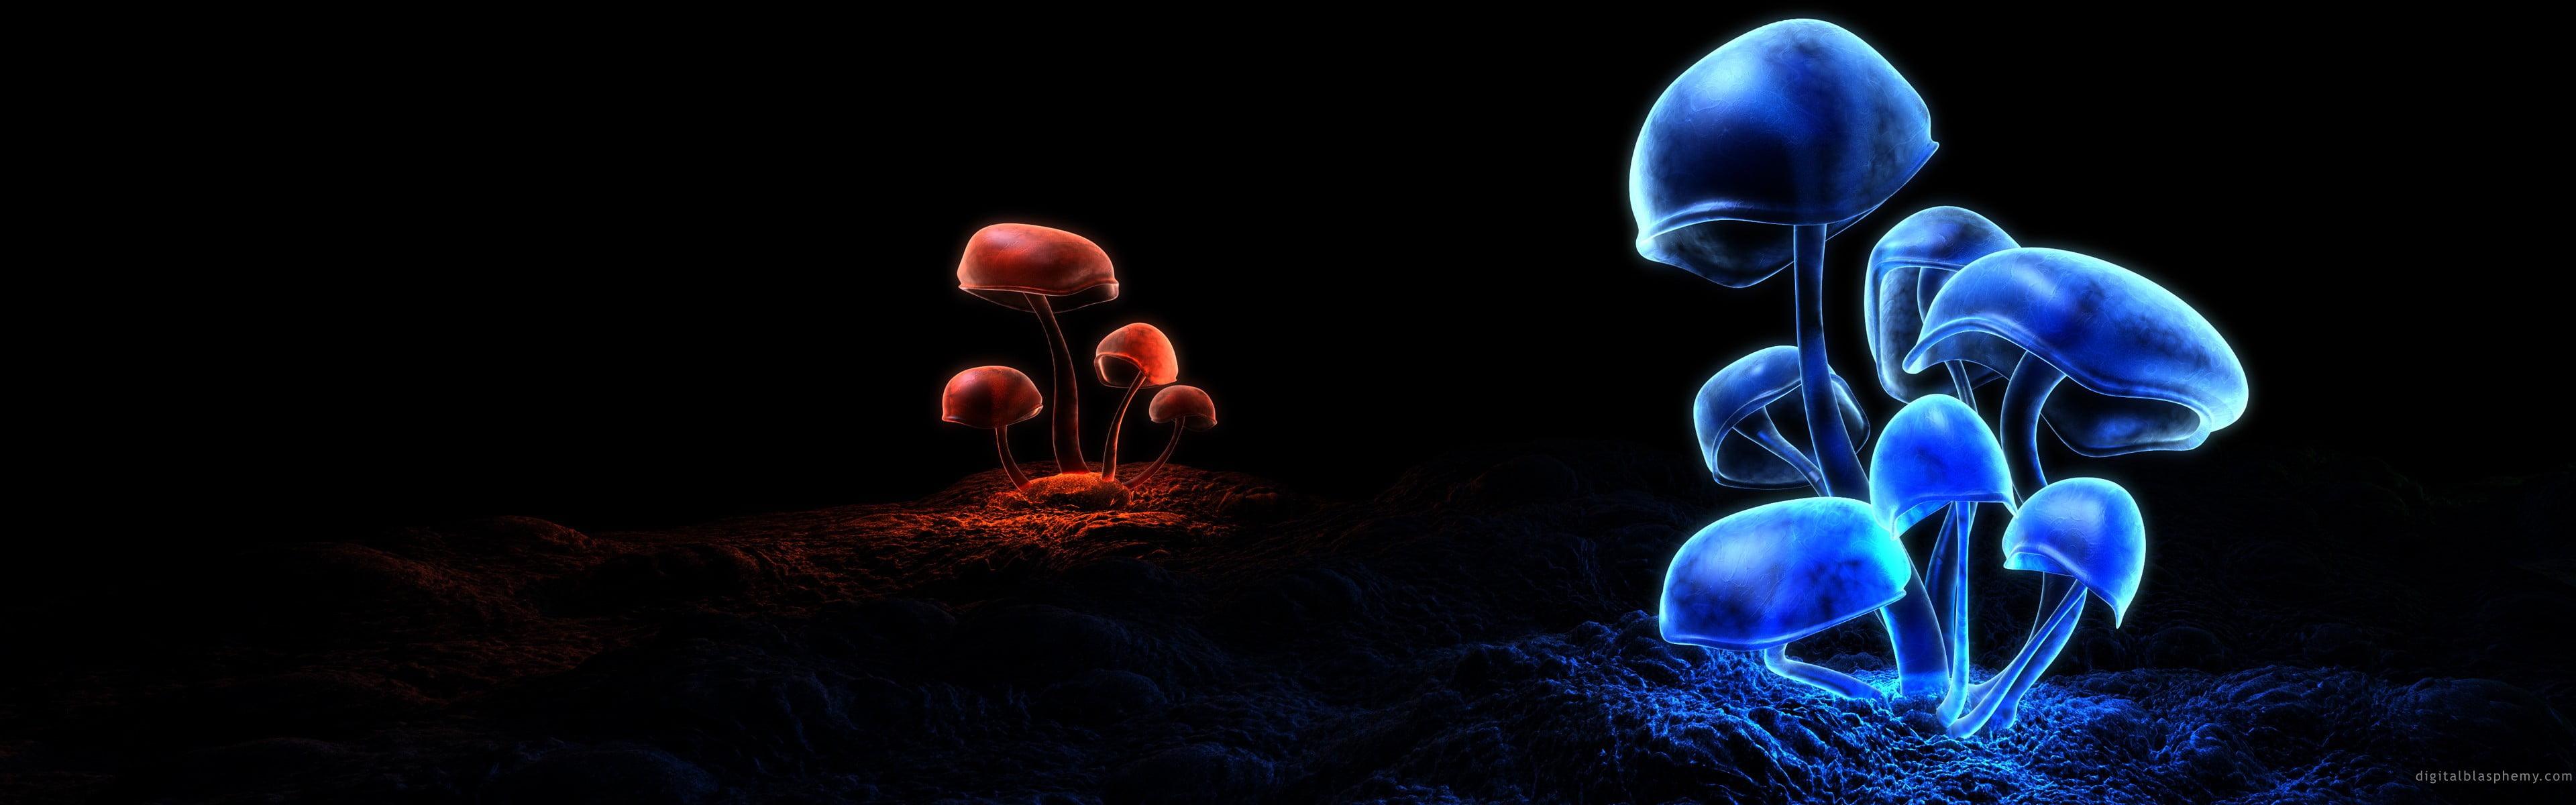 blue and red mushrooms, multiple display, mushroom, nature, digital art